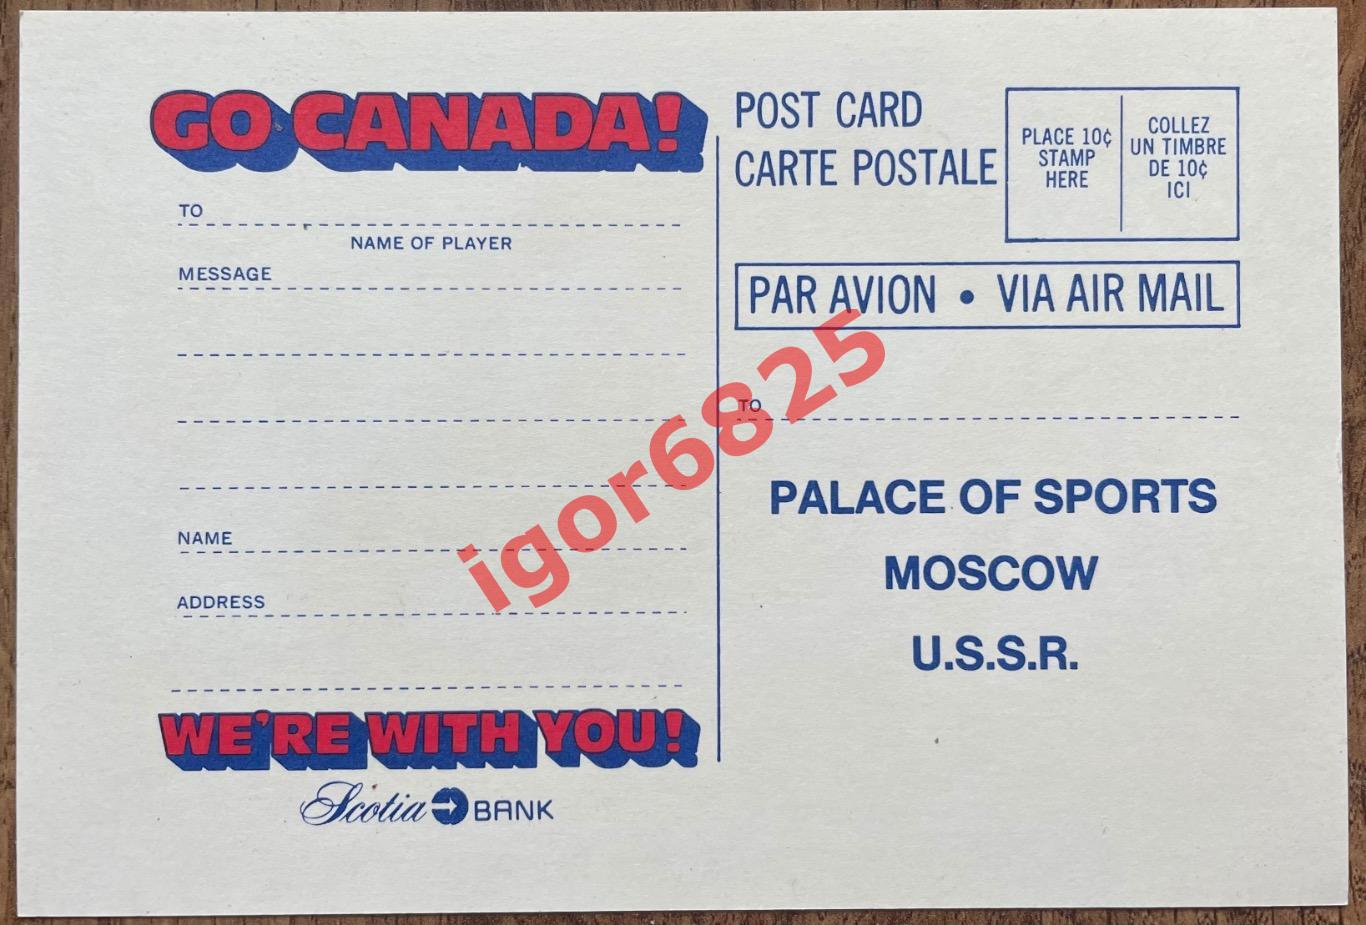 Хоккей. Канада - СССР (GO CANADA - USSR) Суперсерия 1972. Почтовая открытка. 1